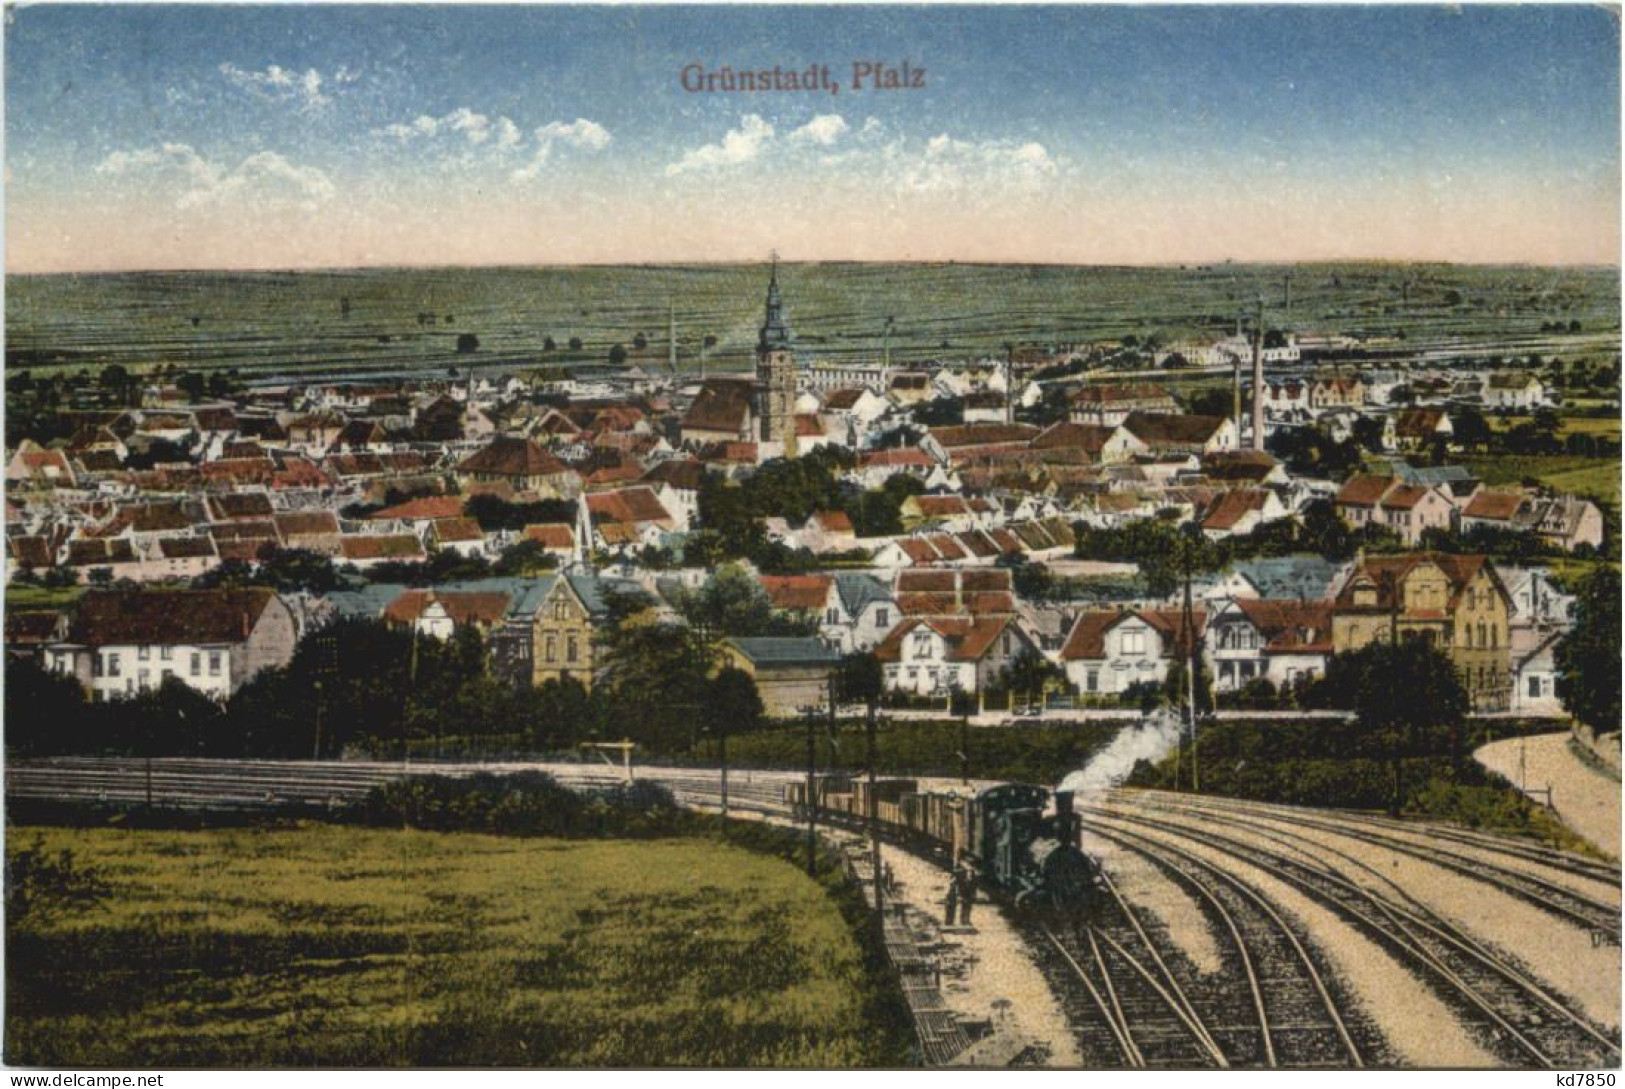 Grünstadt - Pfalz - Gruenstadt